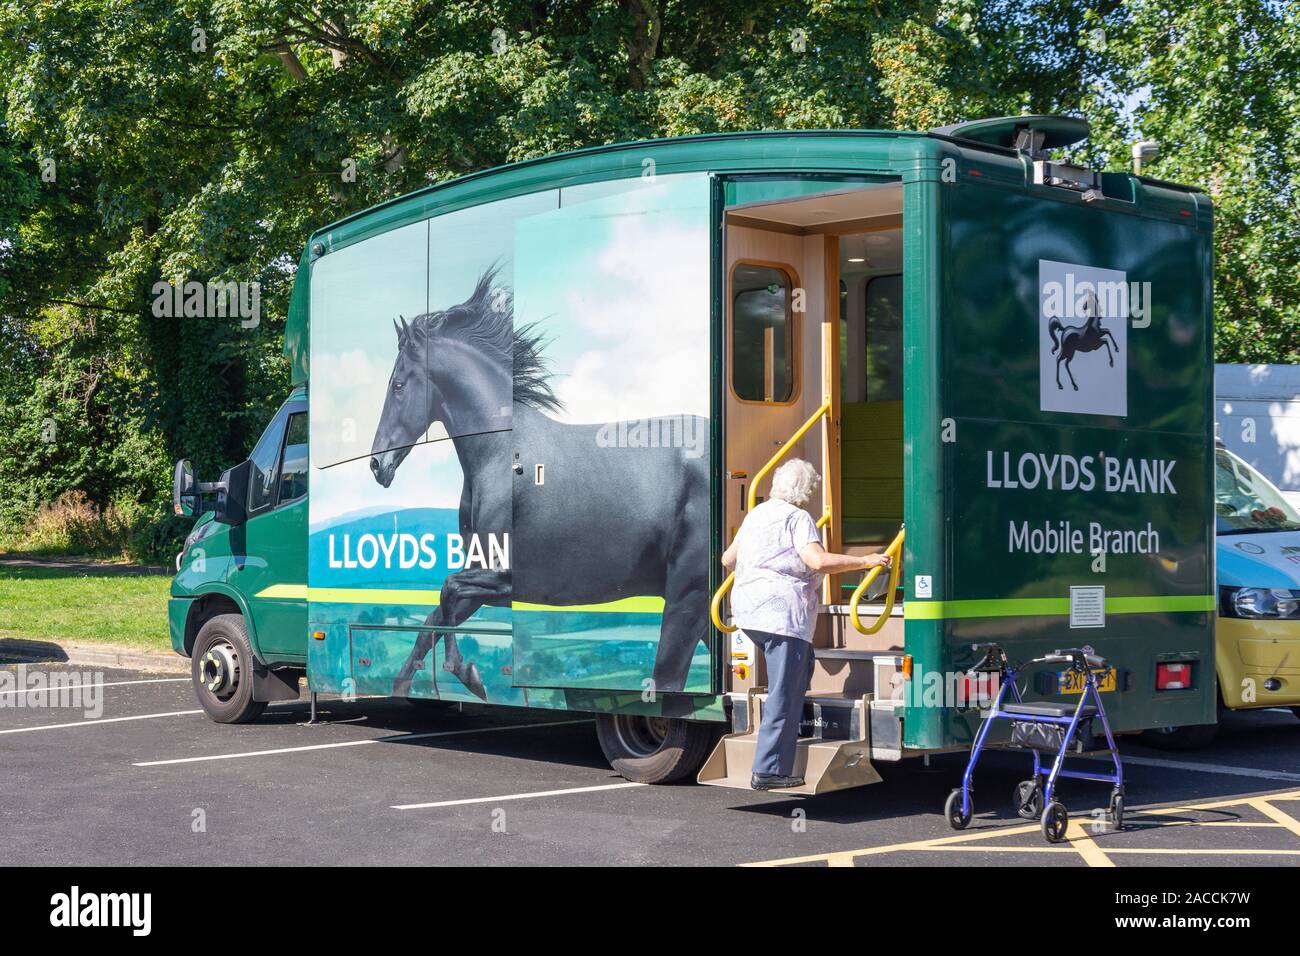 Lloyds Bank Mobile Niederlassung in Parkplatz, Caen Straße, Braunton, Devon, England, Vereinigtes Königreich Stockfoto